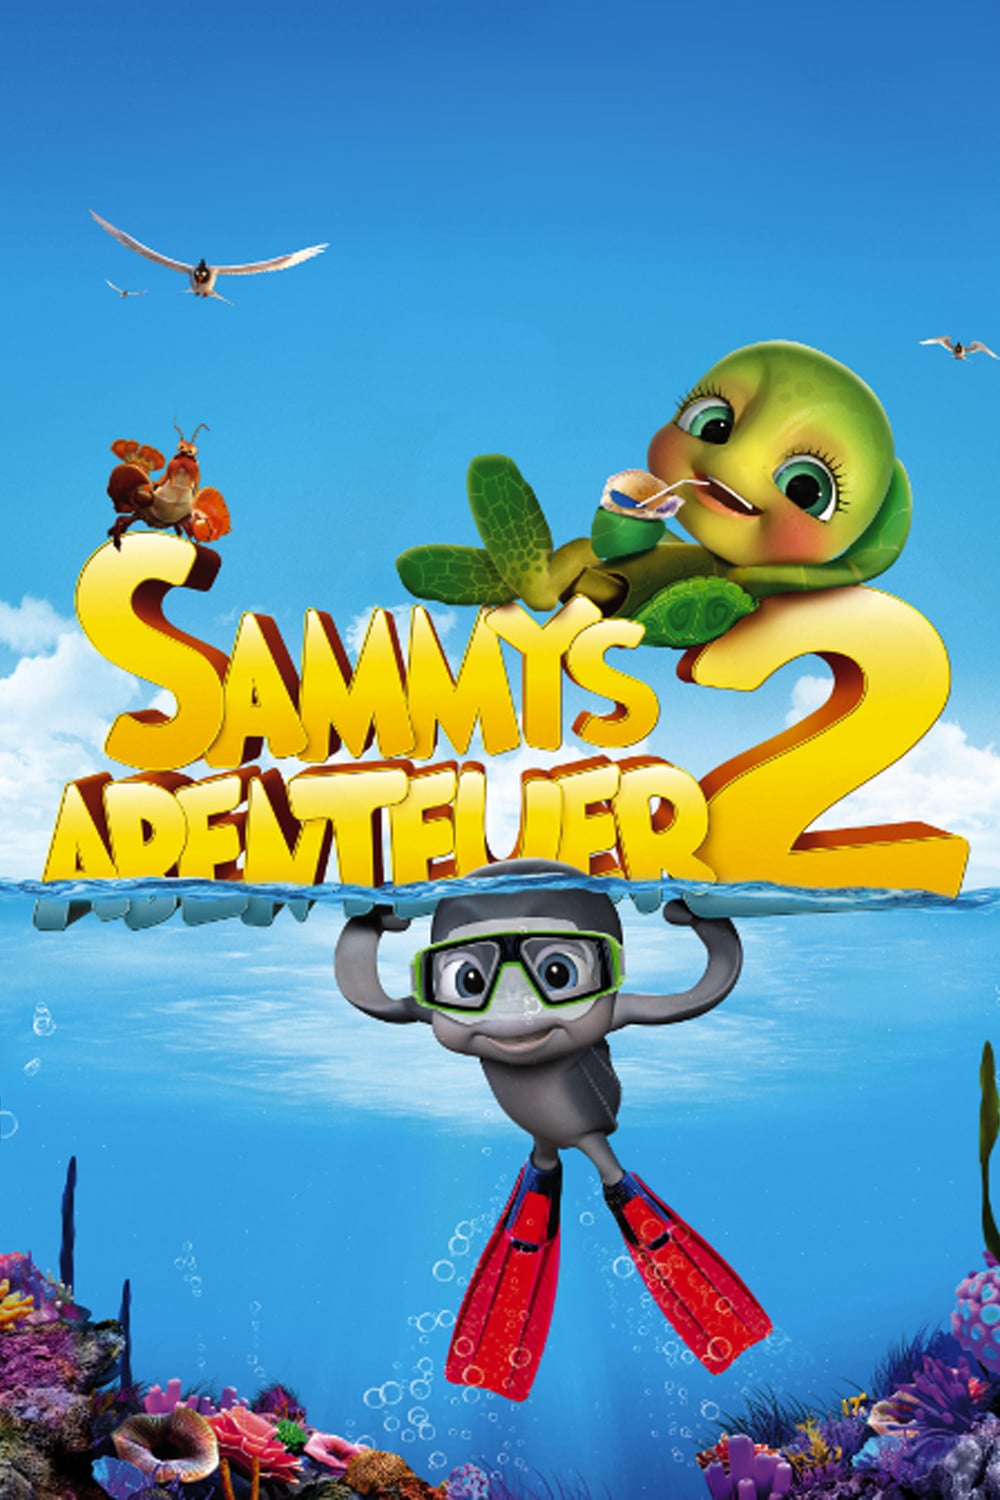 Plakat von "Sammys Abenteuer 2"